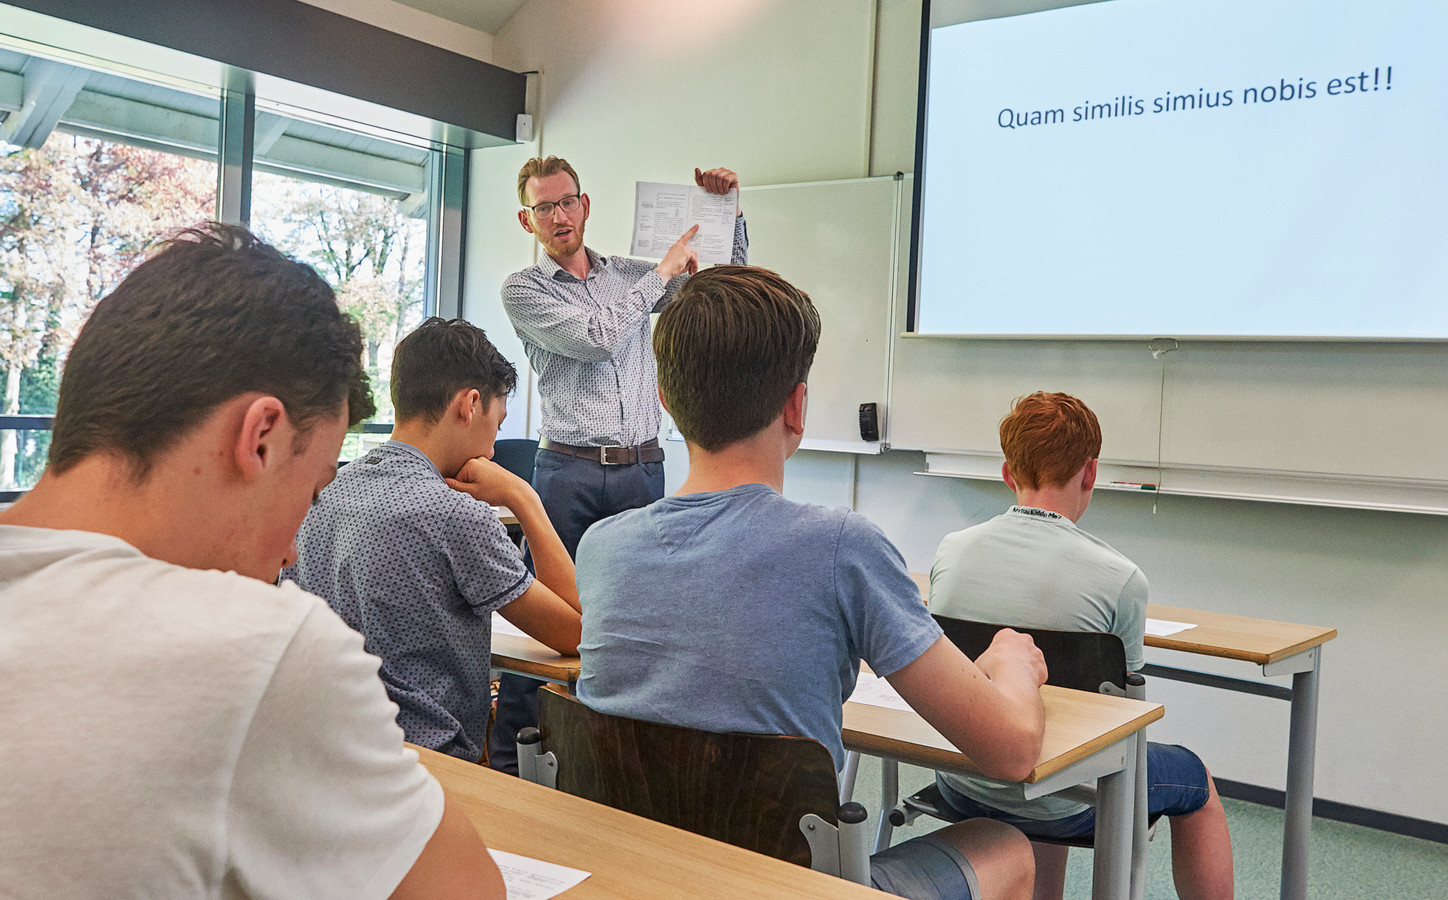 Op Bernrode in Heeswijk Dinther krijgen leerlingen Latijnse les door docent Jan Bart van het Ichthuscollege in Veenendaal. Met Latijn als voertaal!